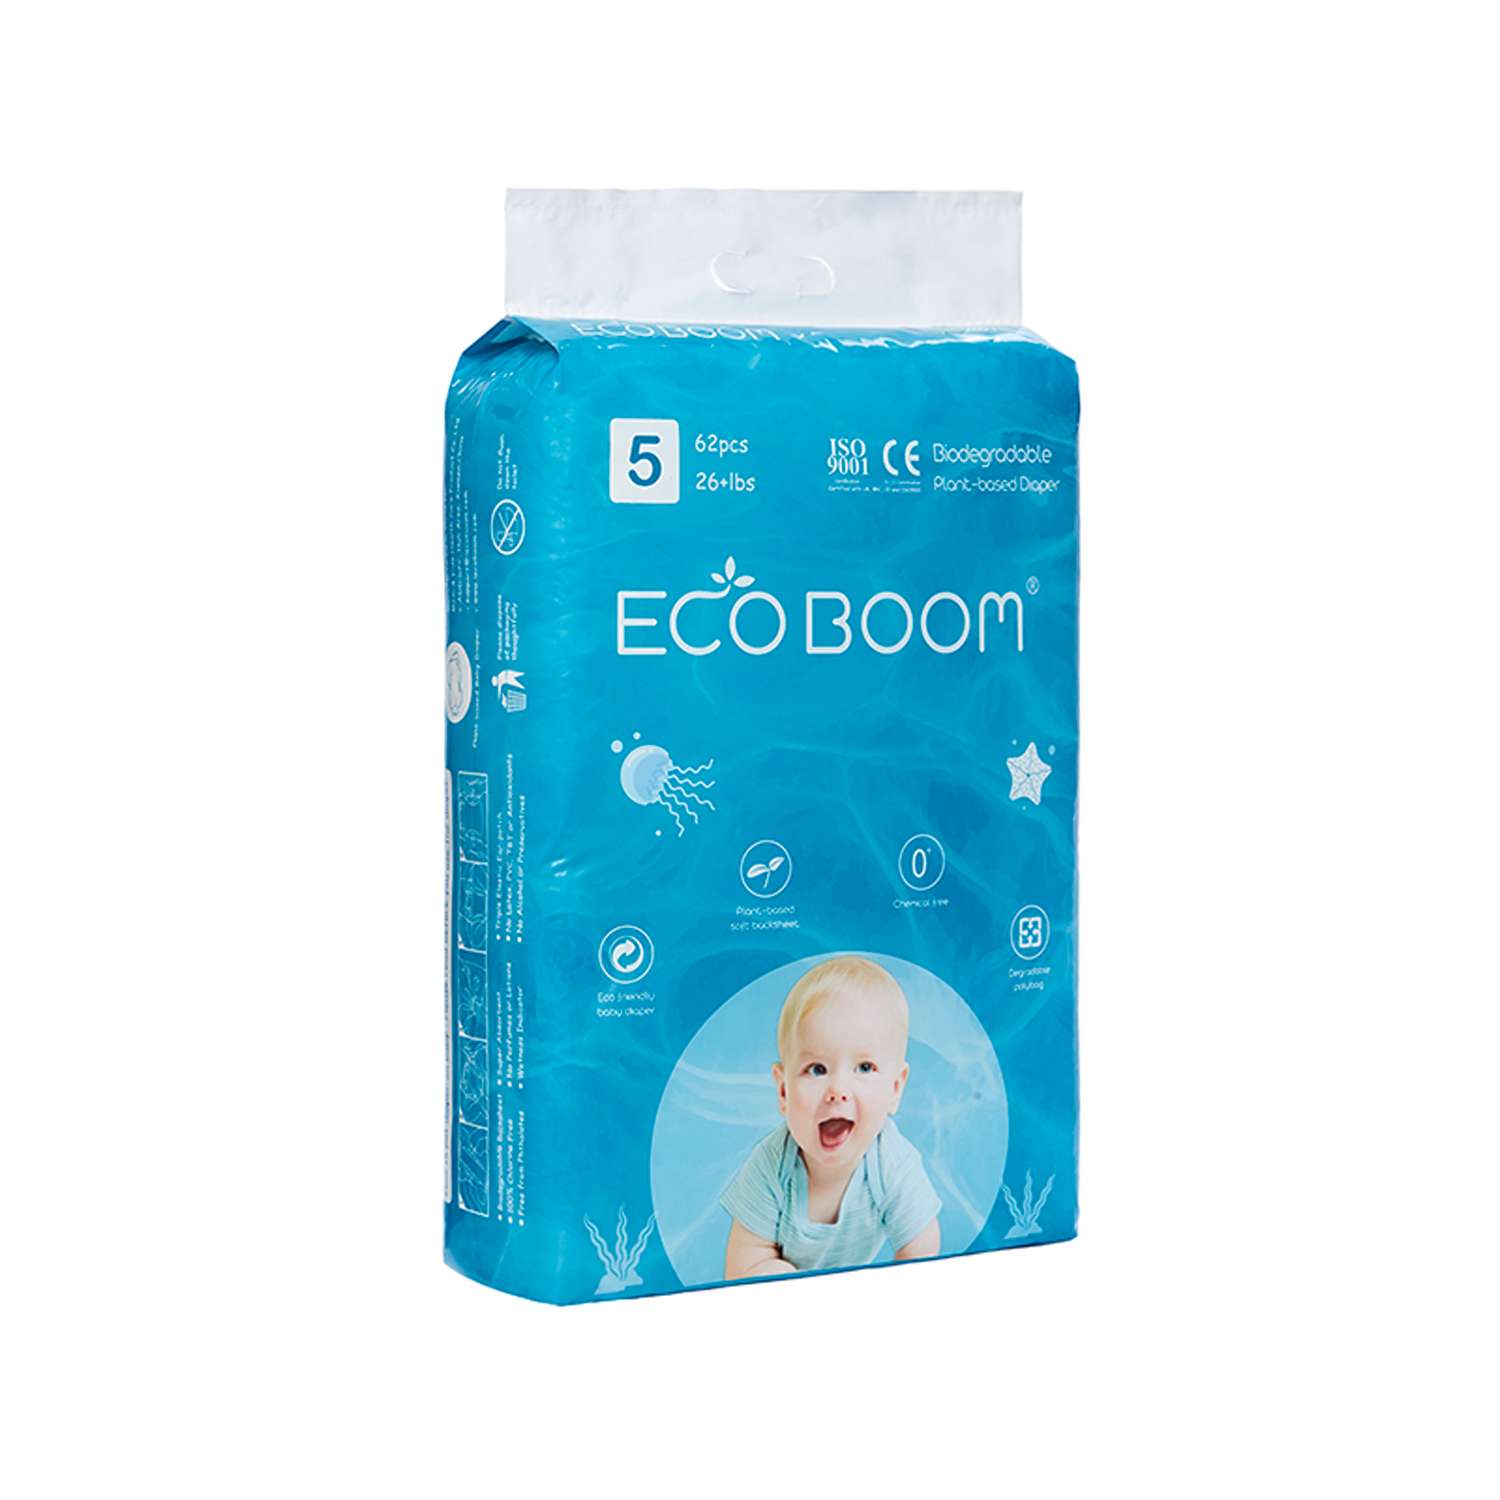 Эко подгузники детские ECO BOOM размер 5/XL для детей весом 12 кг. и более 62 шт - фото 2